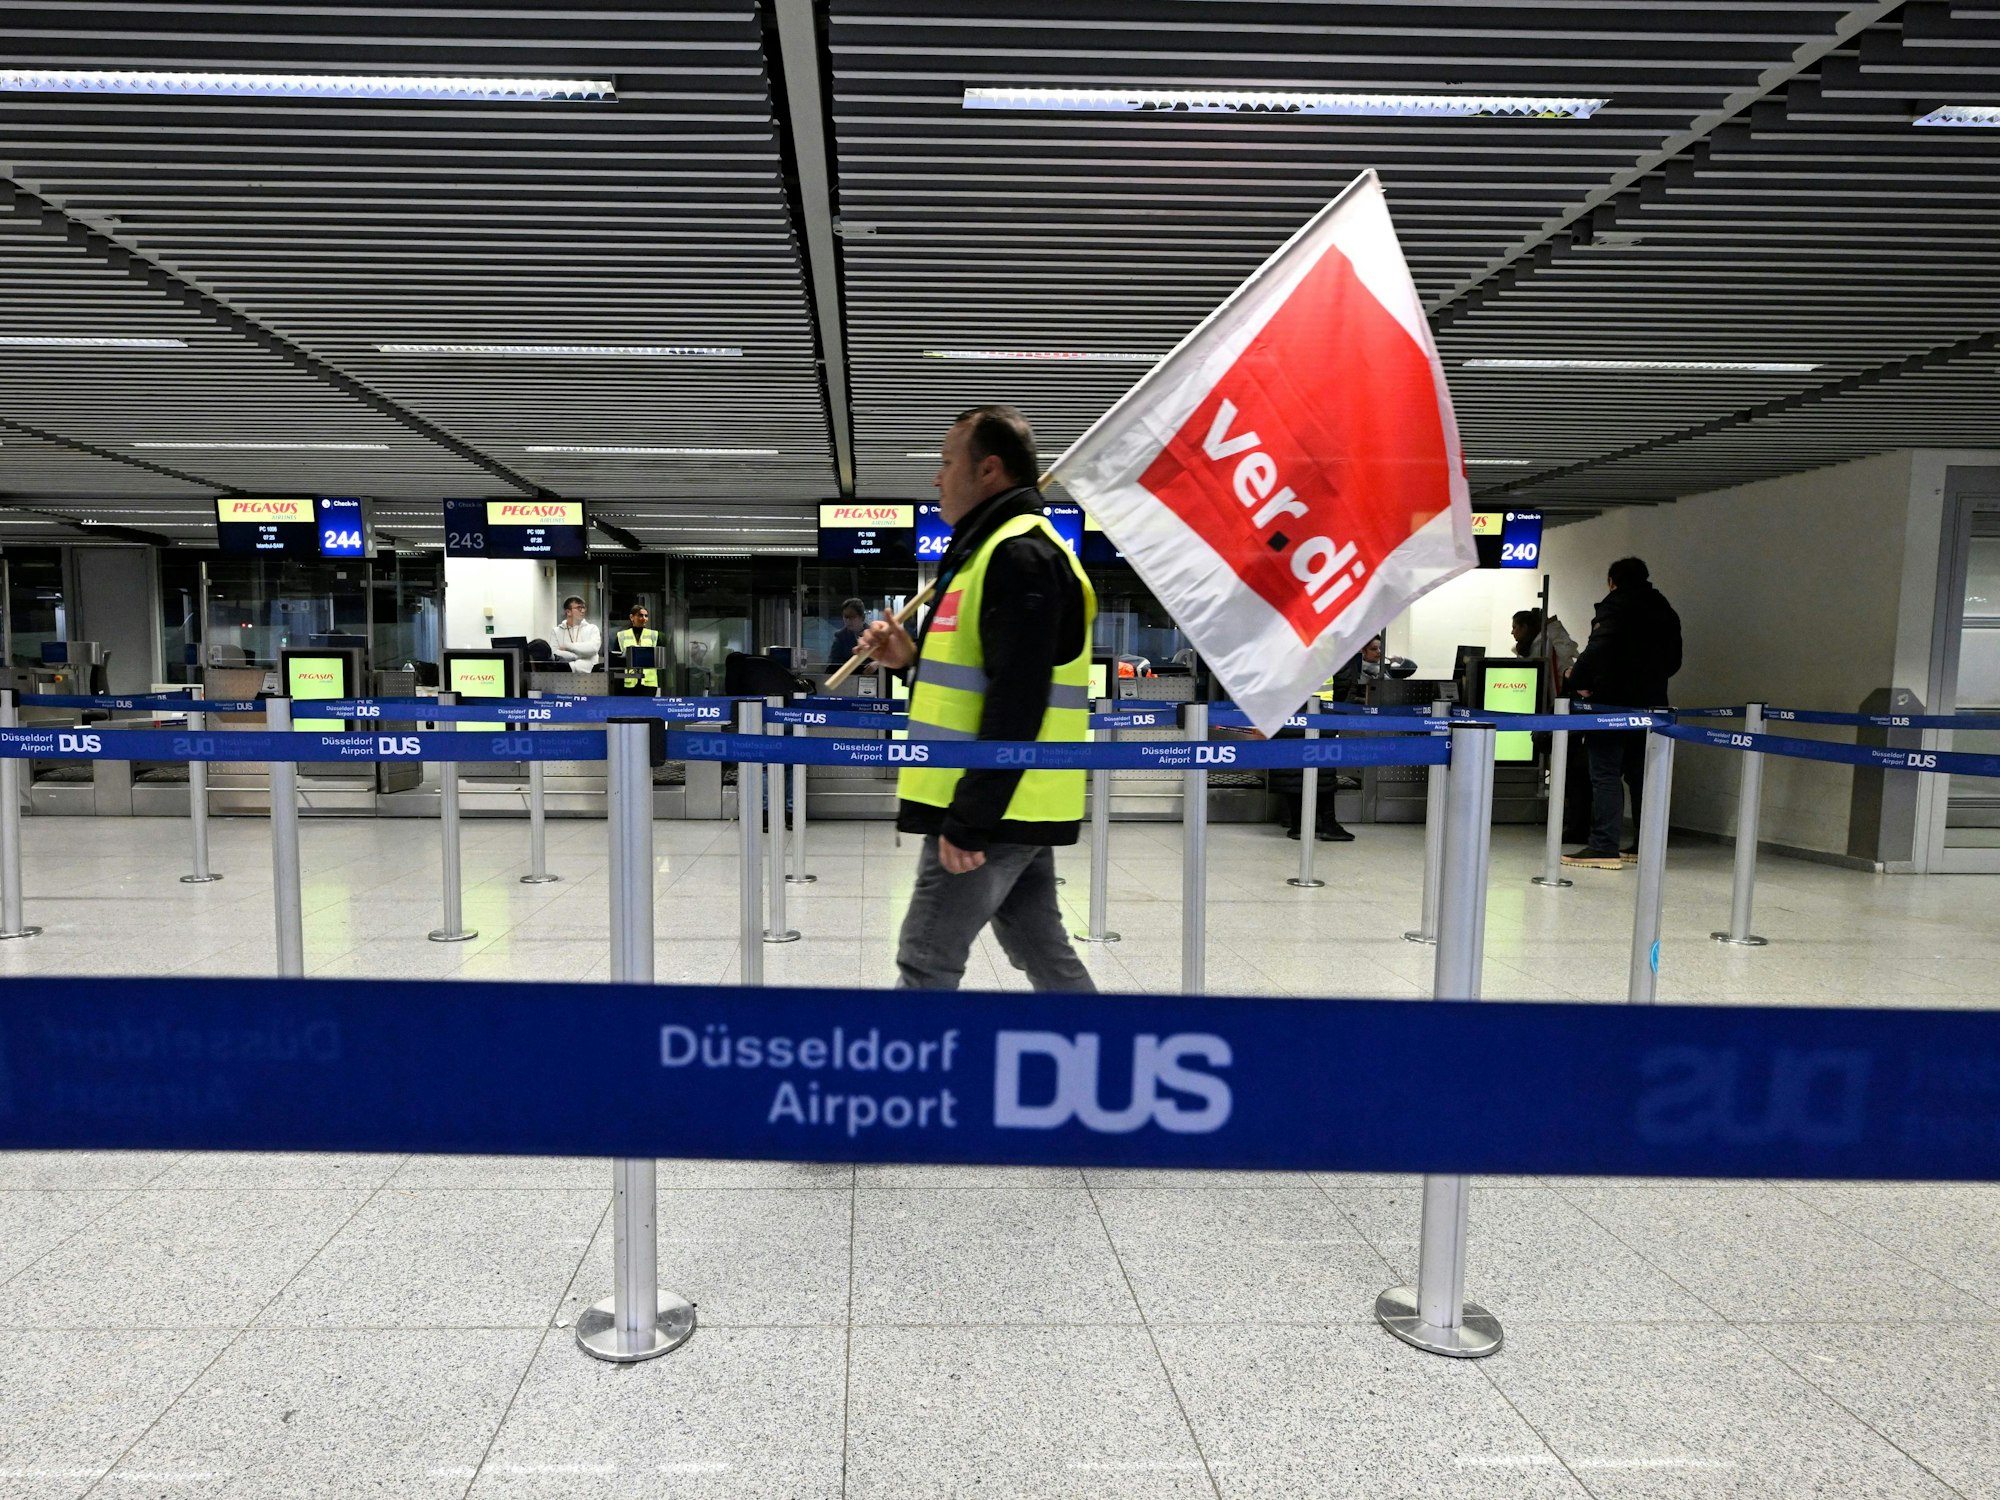 Mann mit Flagge von Verdi spaziert durch den Flughafen in Düsseldorf. Die Gewerkschaft hat zum Streik aufgerufen.